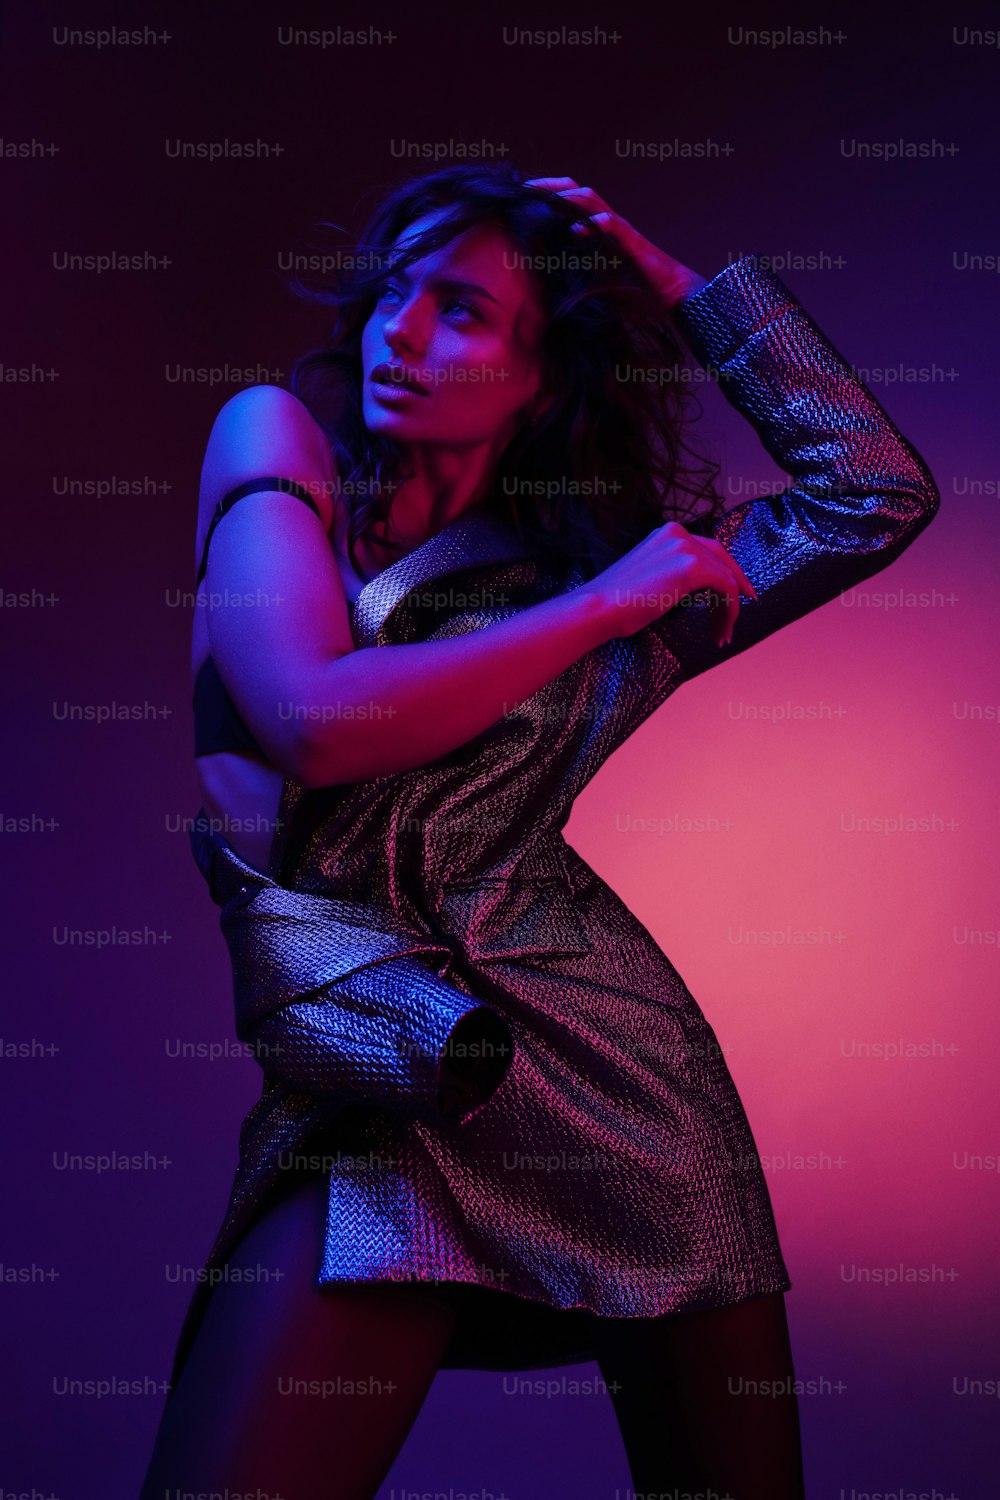 Modelo de mujer de moda en vestido de moda con luces de neón de colores en el estudio. Retrato de una chica sexy con estilo con ropa de moda sobre luz ultravioleta rosa brillante y púrpura en un club nocturno. Estilo